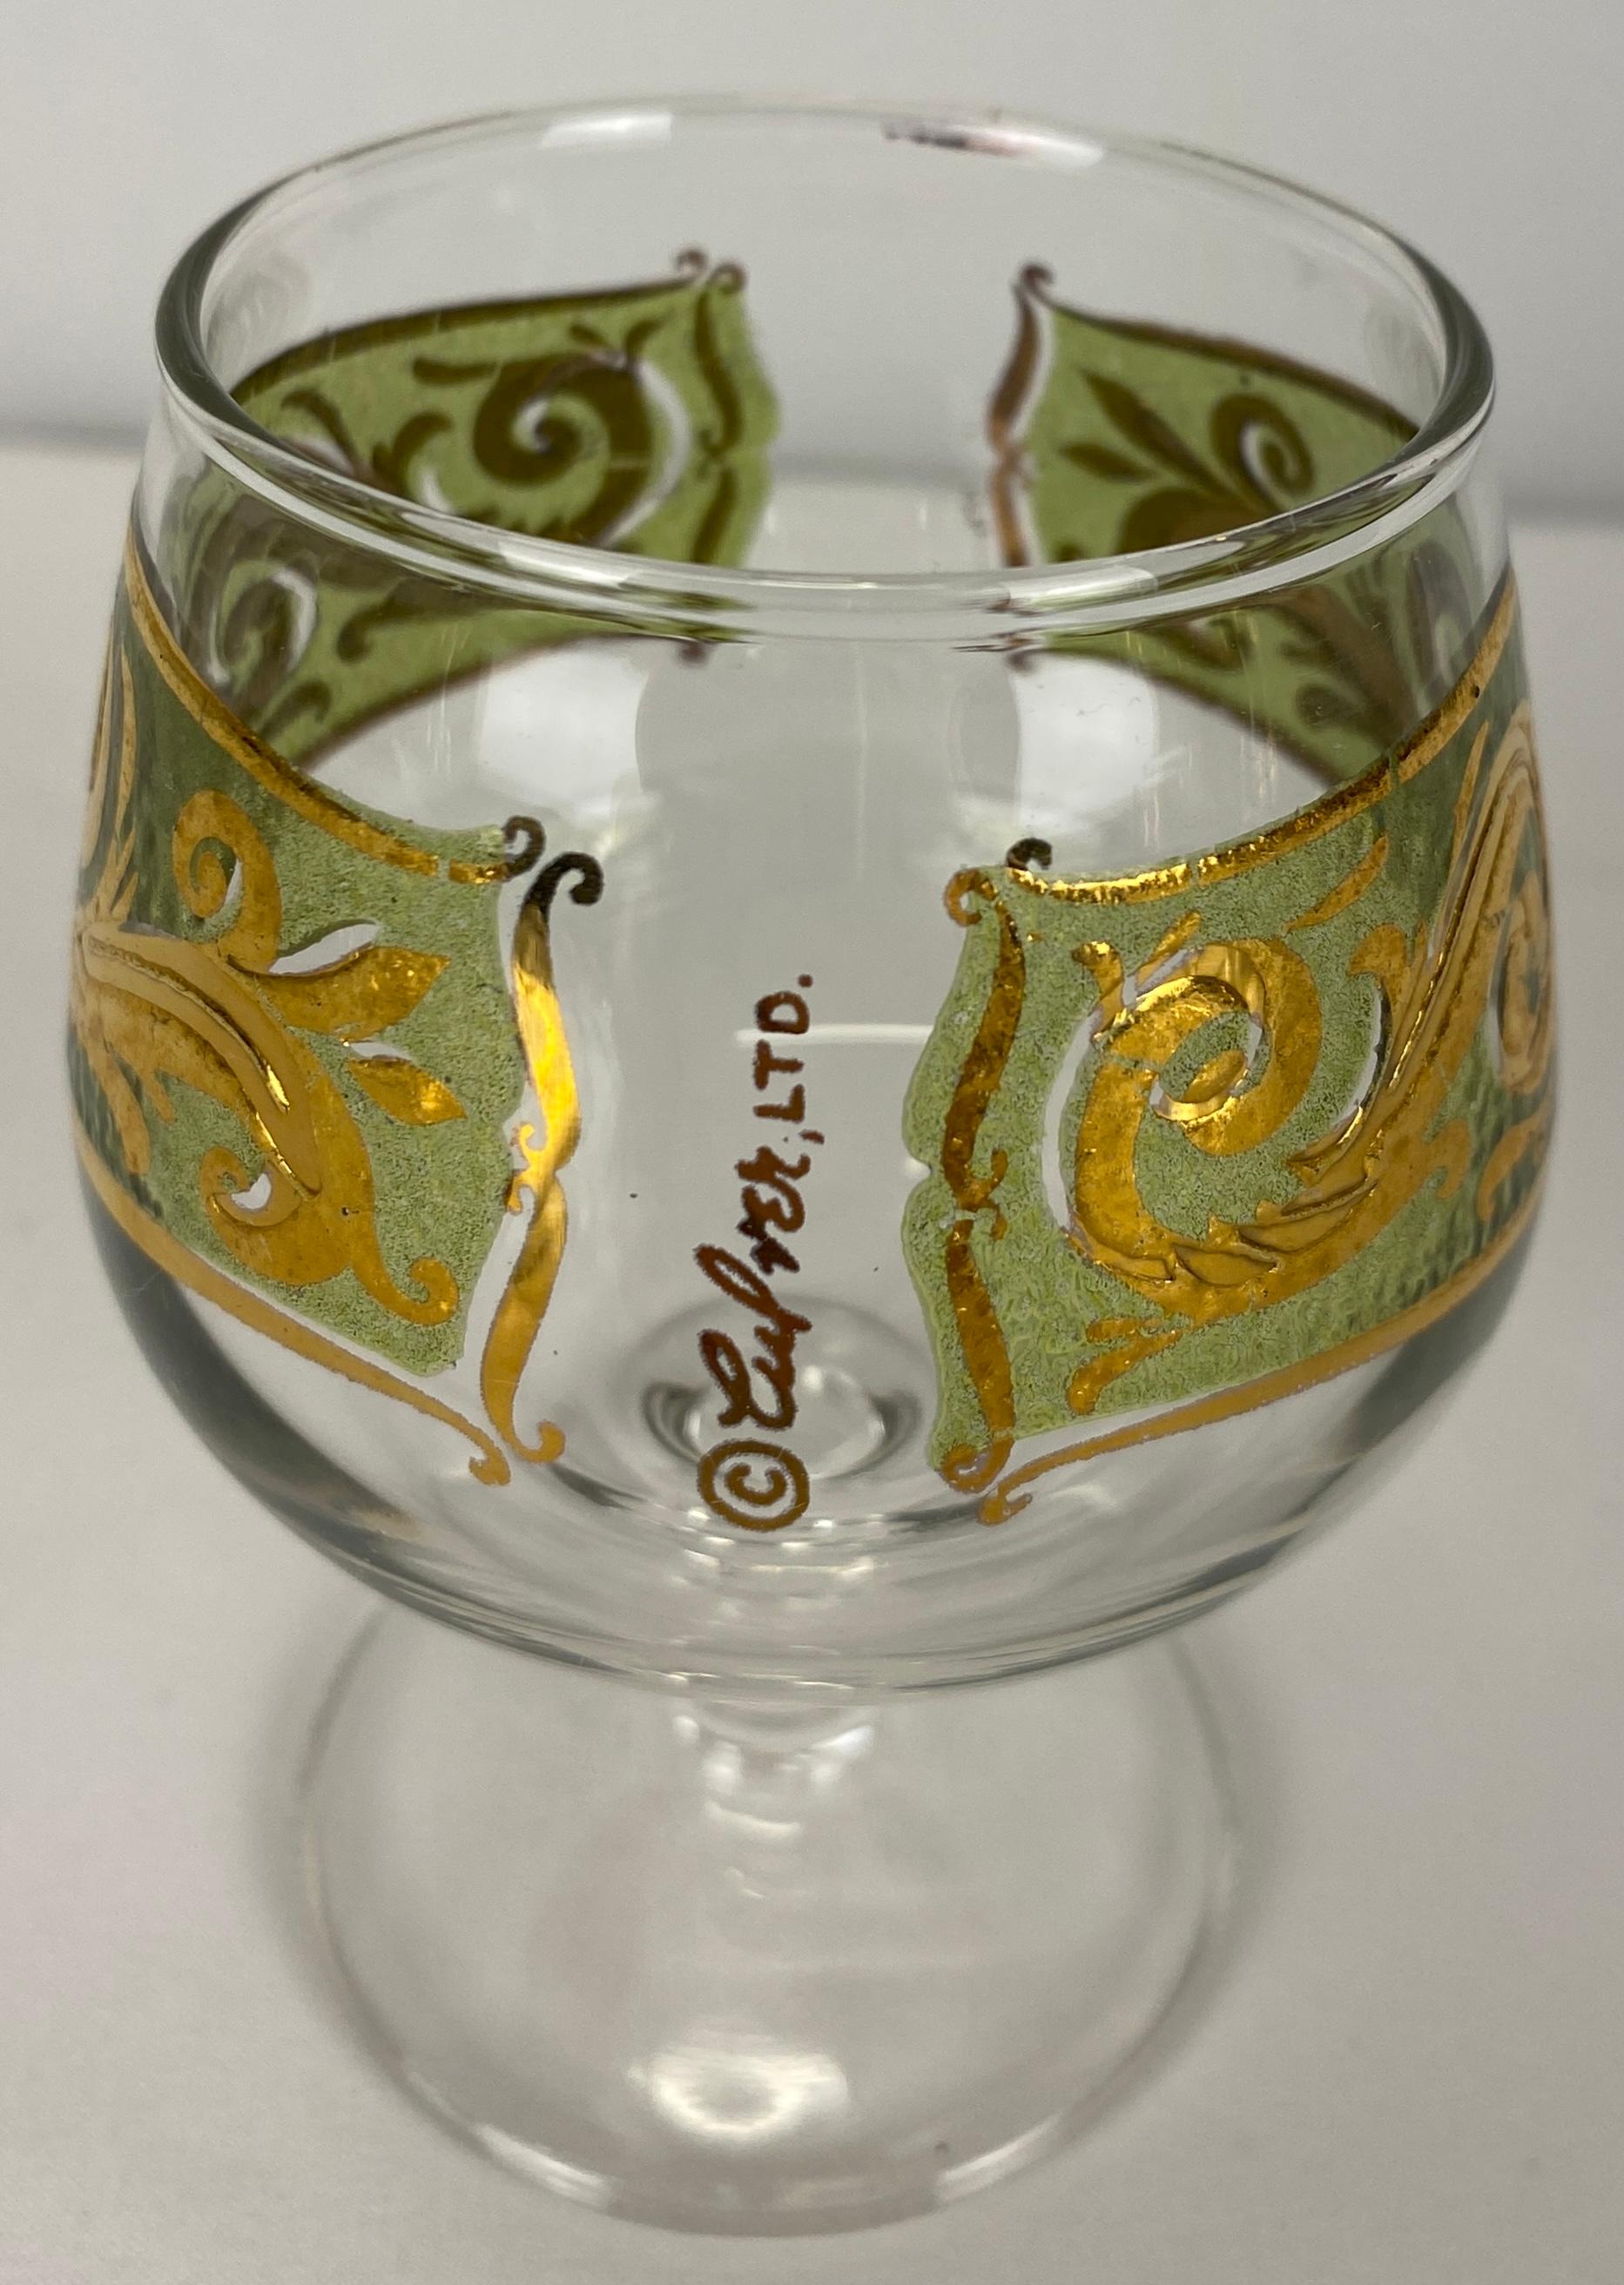 Set de 8 verres à liqueur Culver.  Magnifique design sur le thème du Maroc avec de l'or 22 carats, parfait pour servir les hors-d'œuvre.

Ces verres à liqueur Culver très ornés présentent un design filigrane texturé en or 22 carats avec des accents